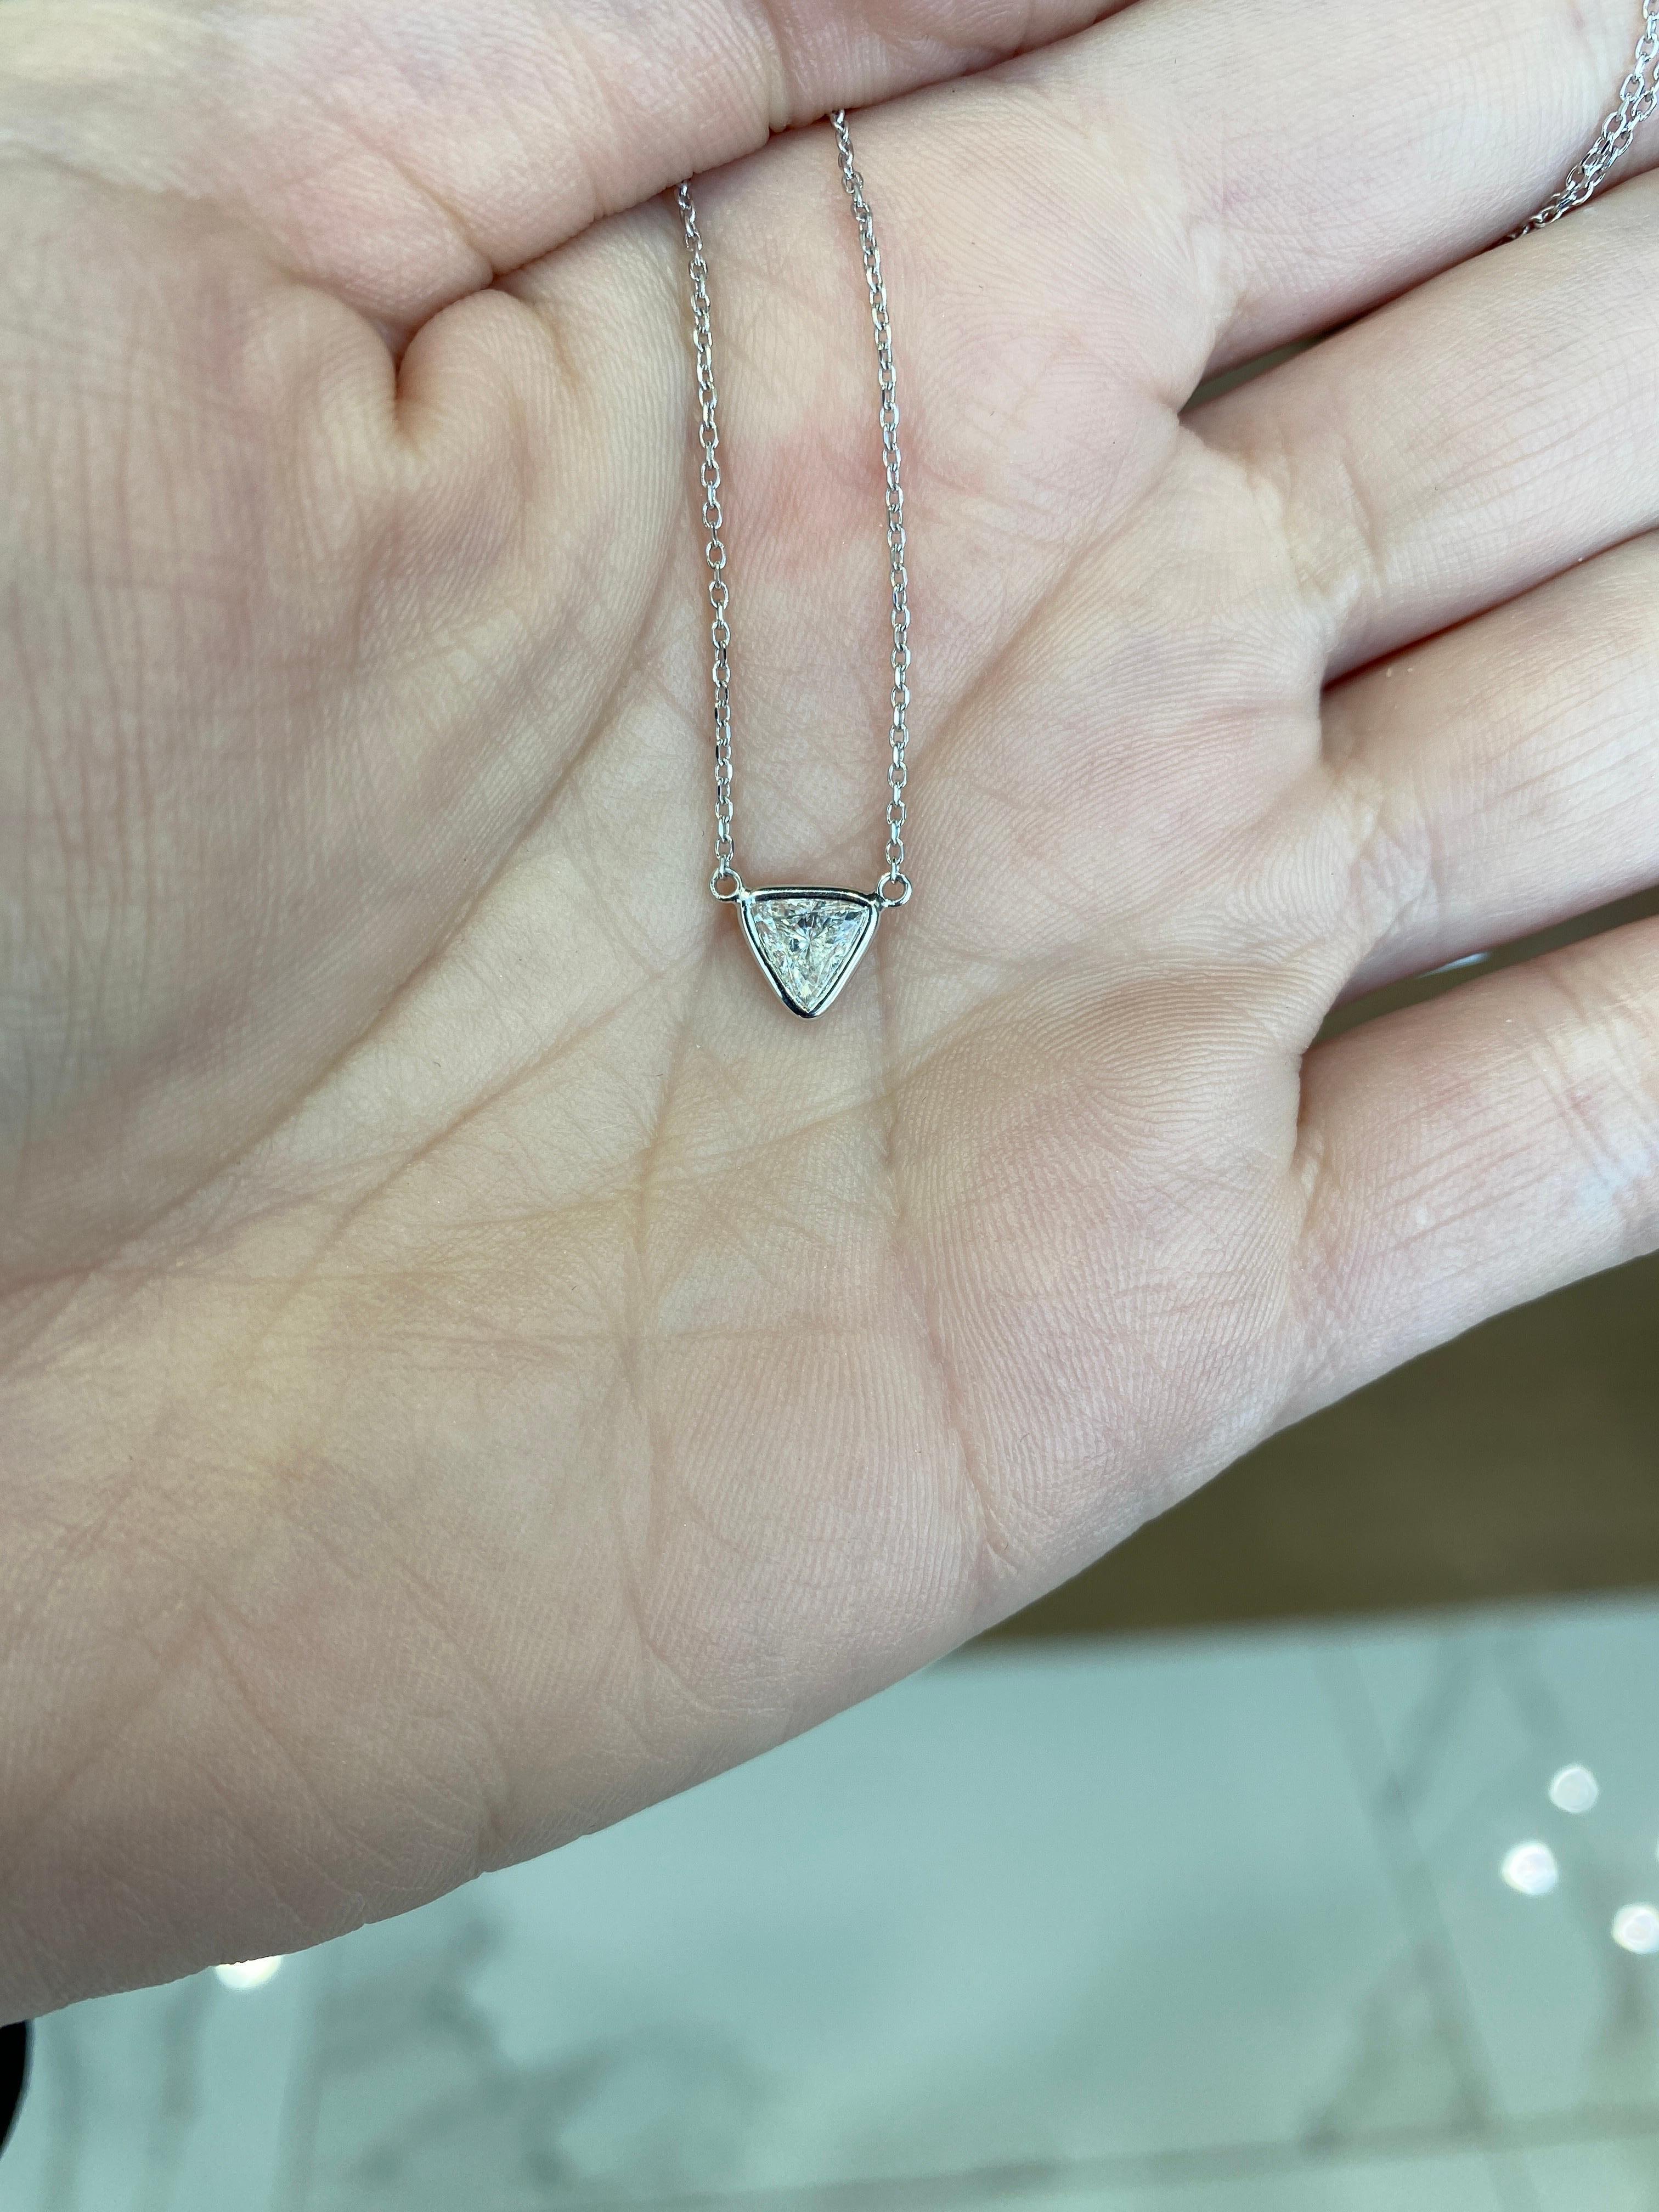 0.46 Carat Natural Trillion Cut Diamond Pendant Necklace, 14k White Gold For Sale 2